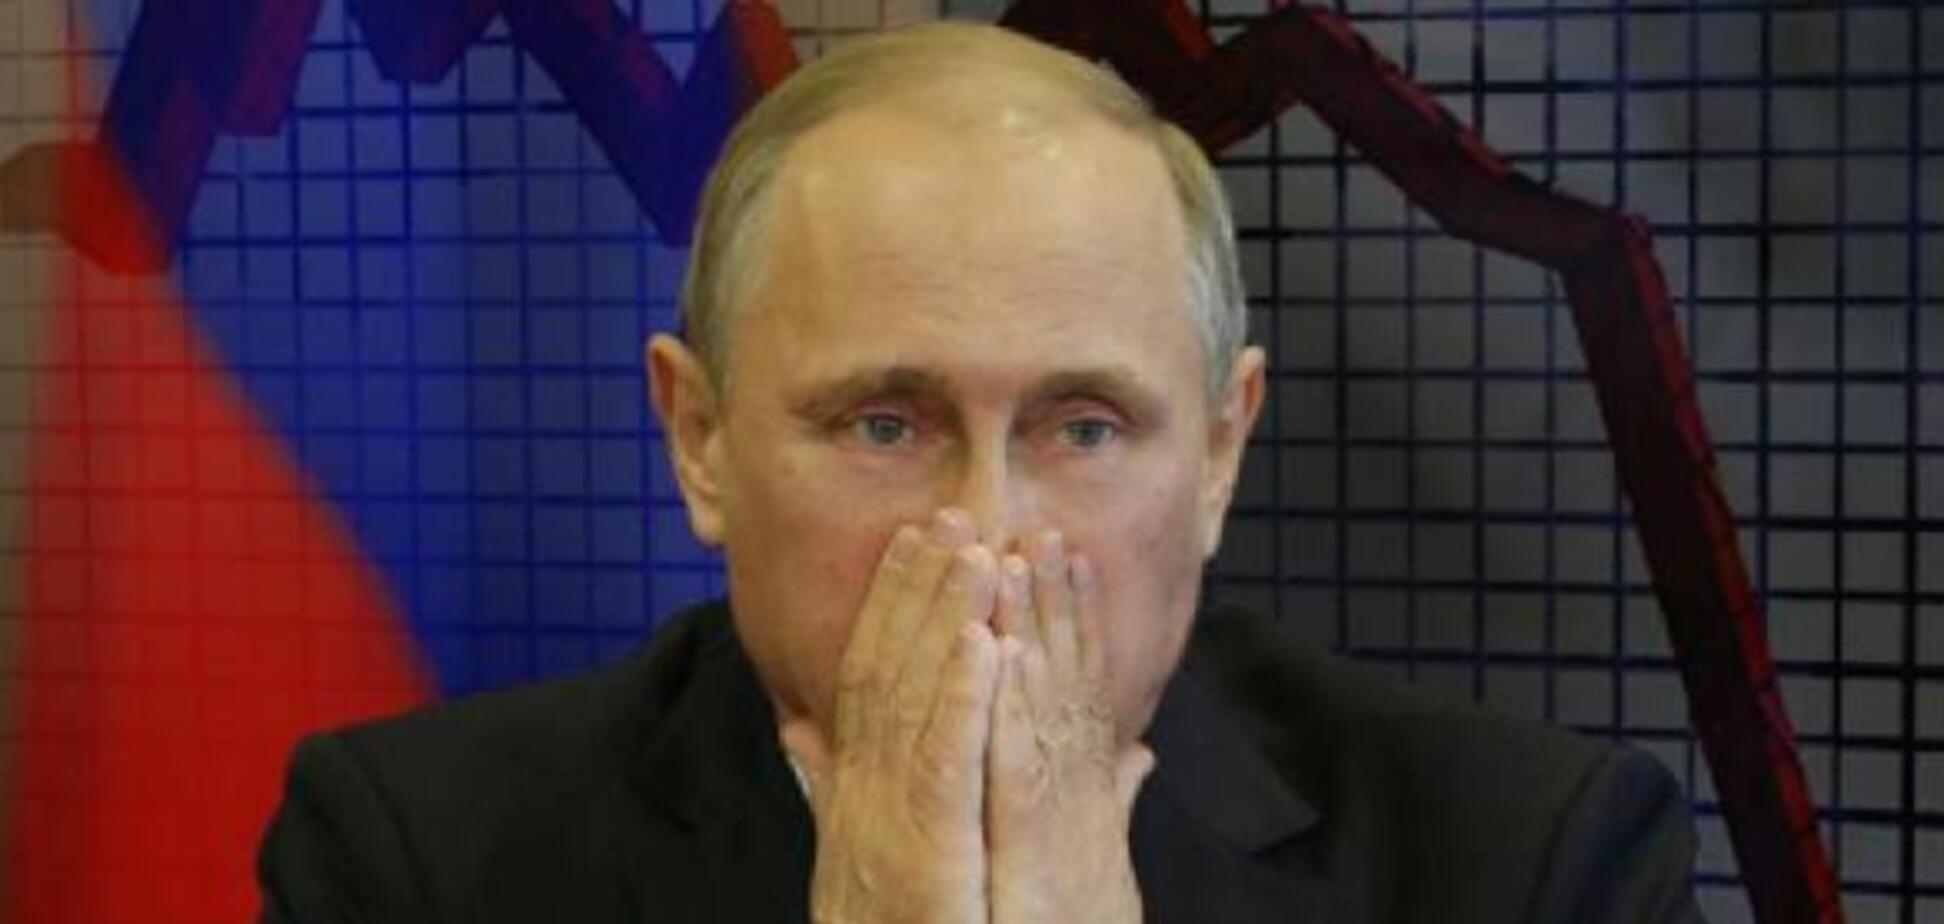 Рейтинг Путина в России рекордно упал: появились конкуренты